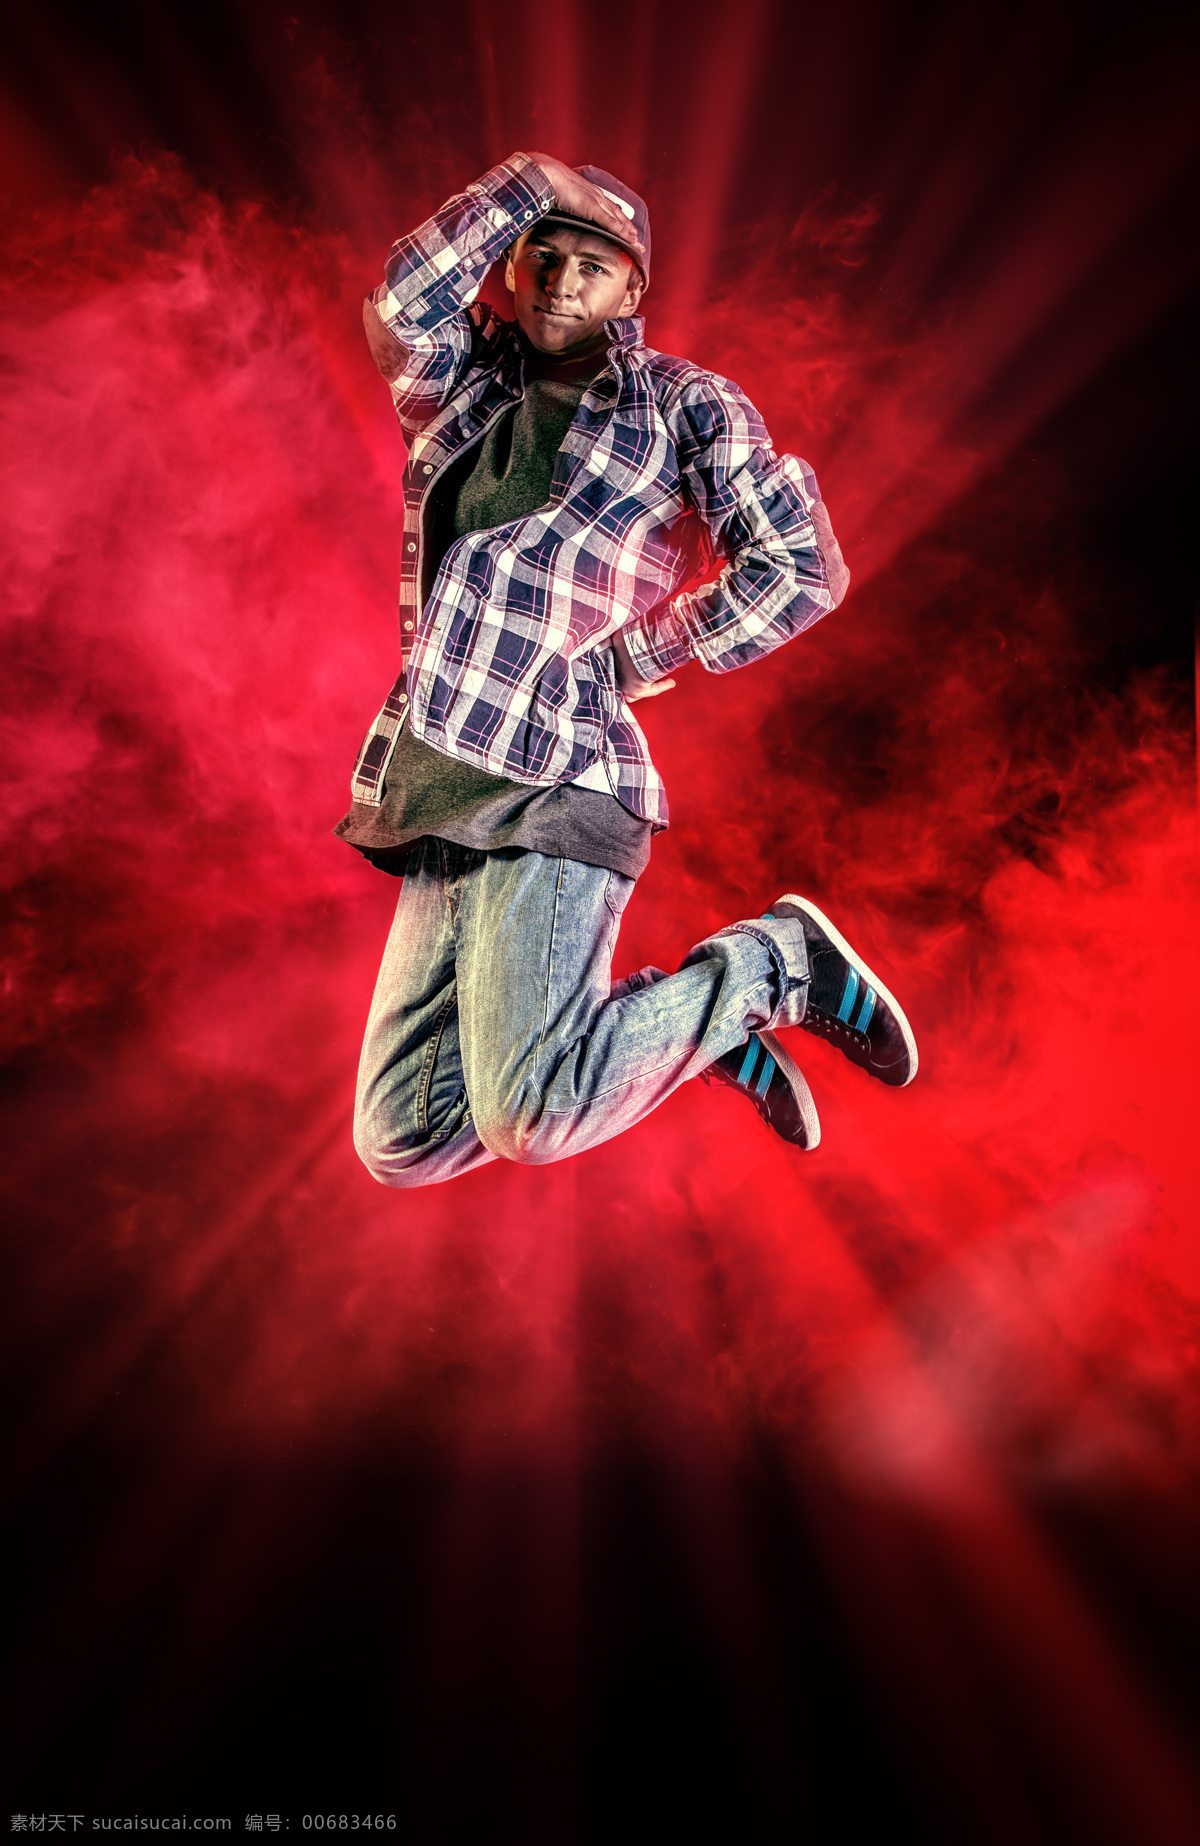 跳跃 男舞者 街舞 嘻哈 舞蹈 舞者 男人 男孩 红色烟雾背景 表演 其他人物 人物图片